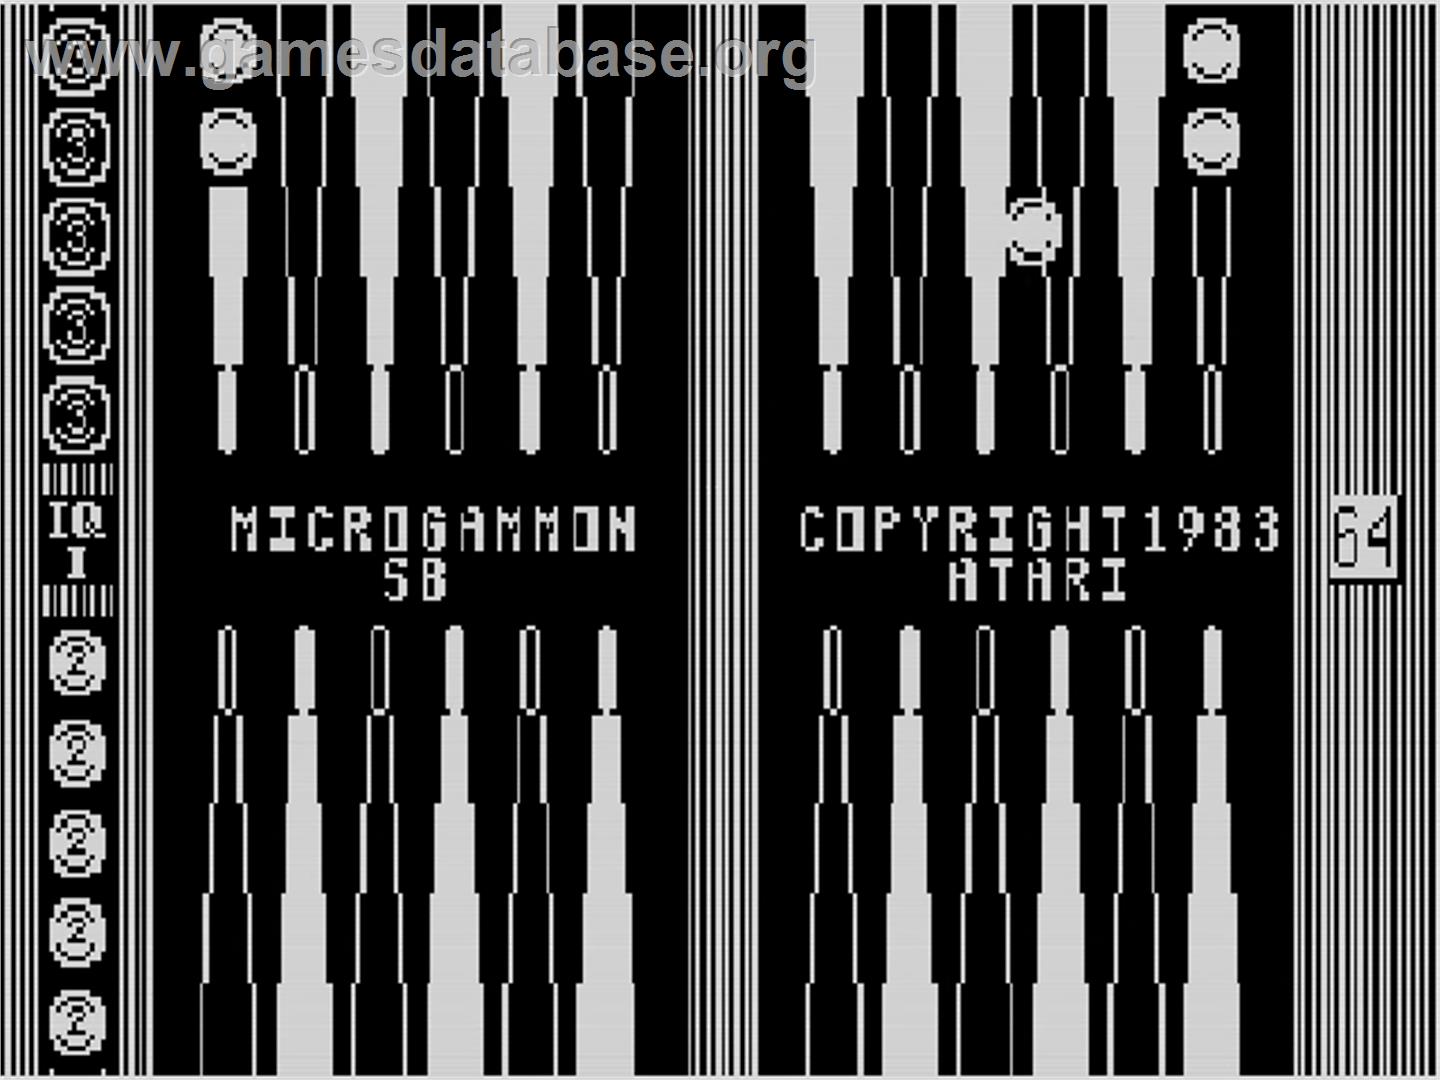 Microgammon SB - Atari 5200 - Artwork - Title Screen